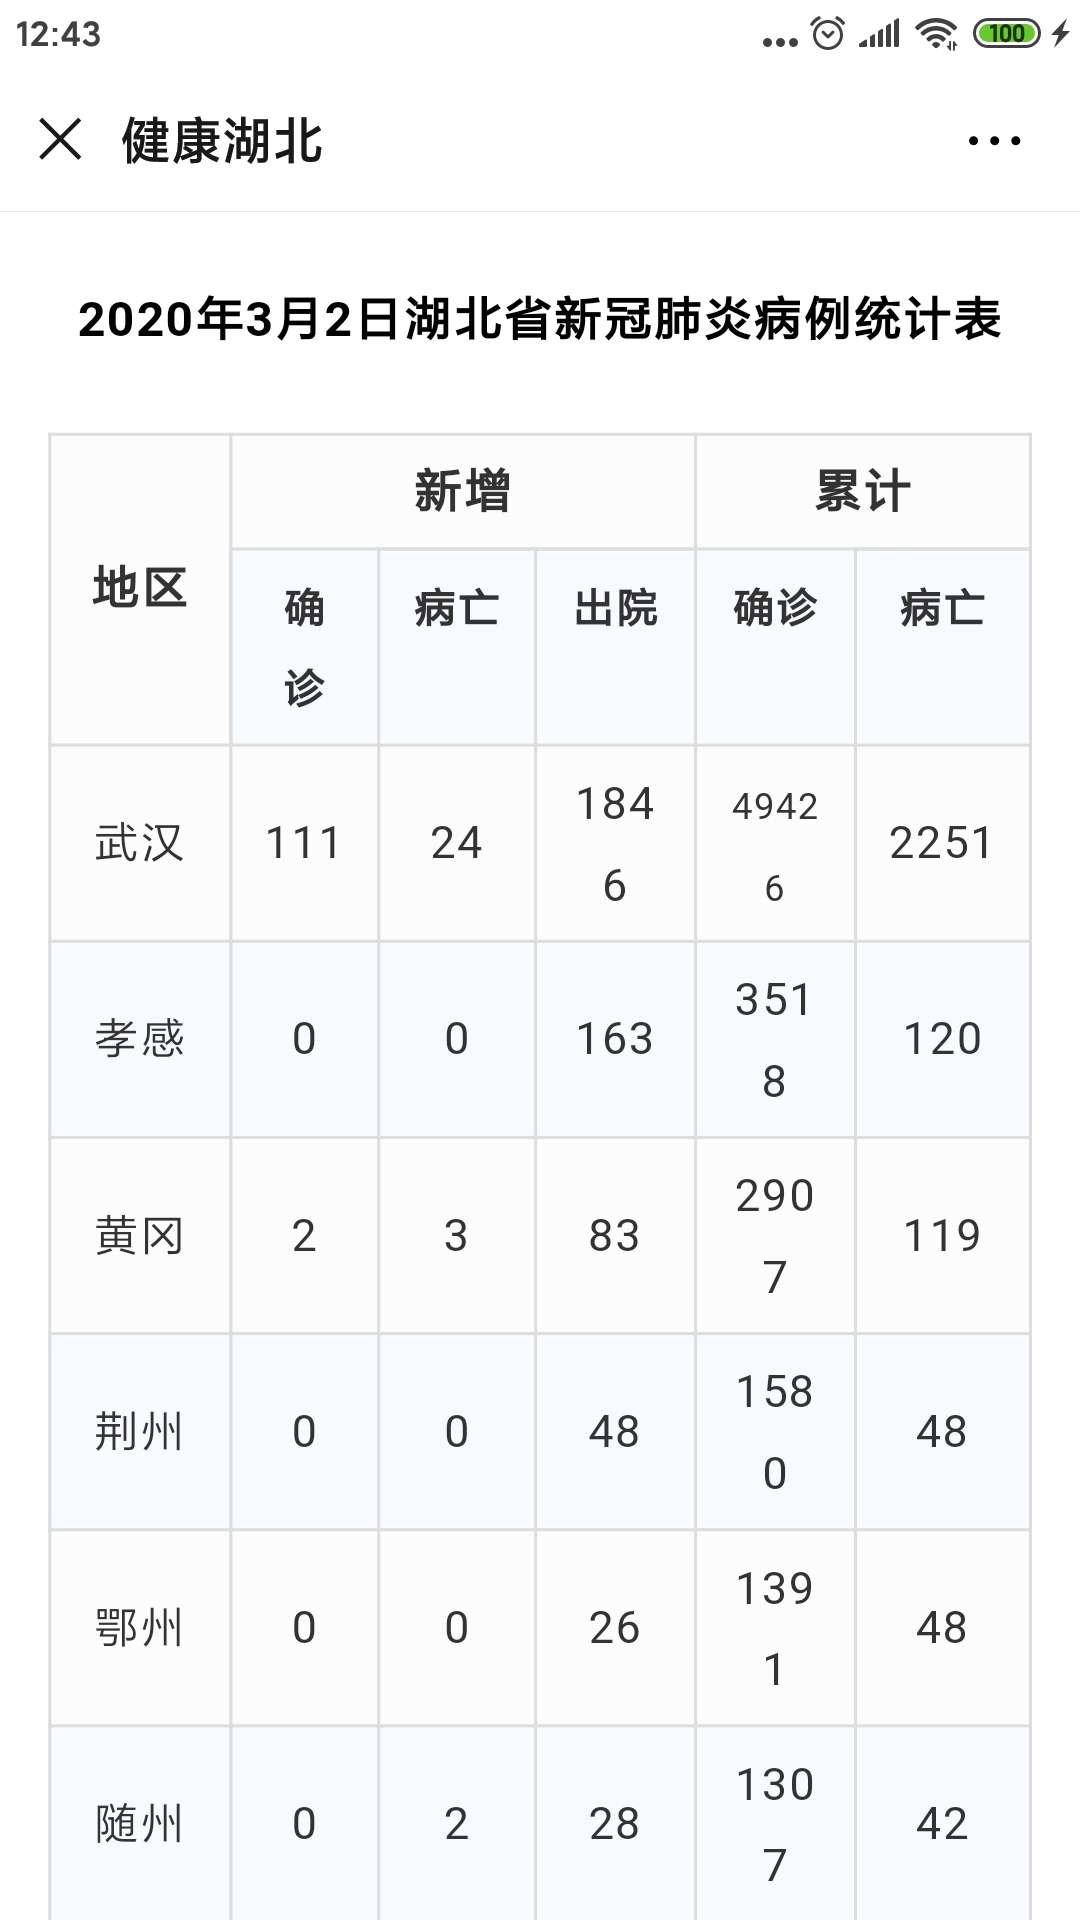 2020年3月2日湖北省新冠肺炎疫情情况附统计表